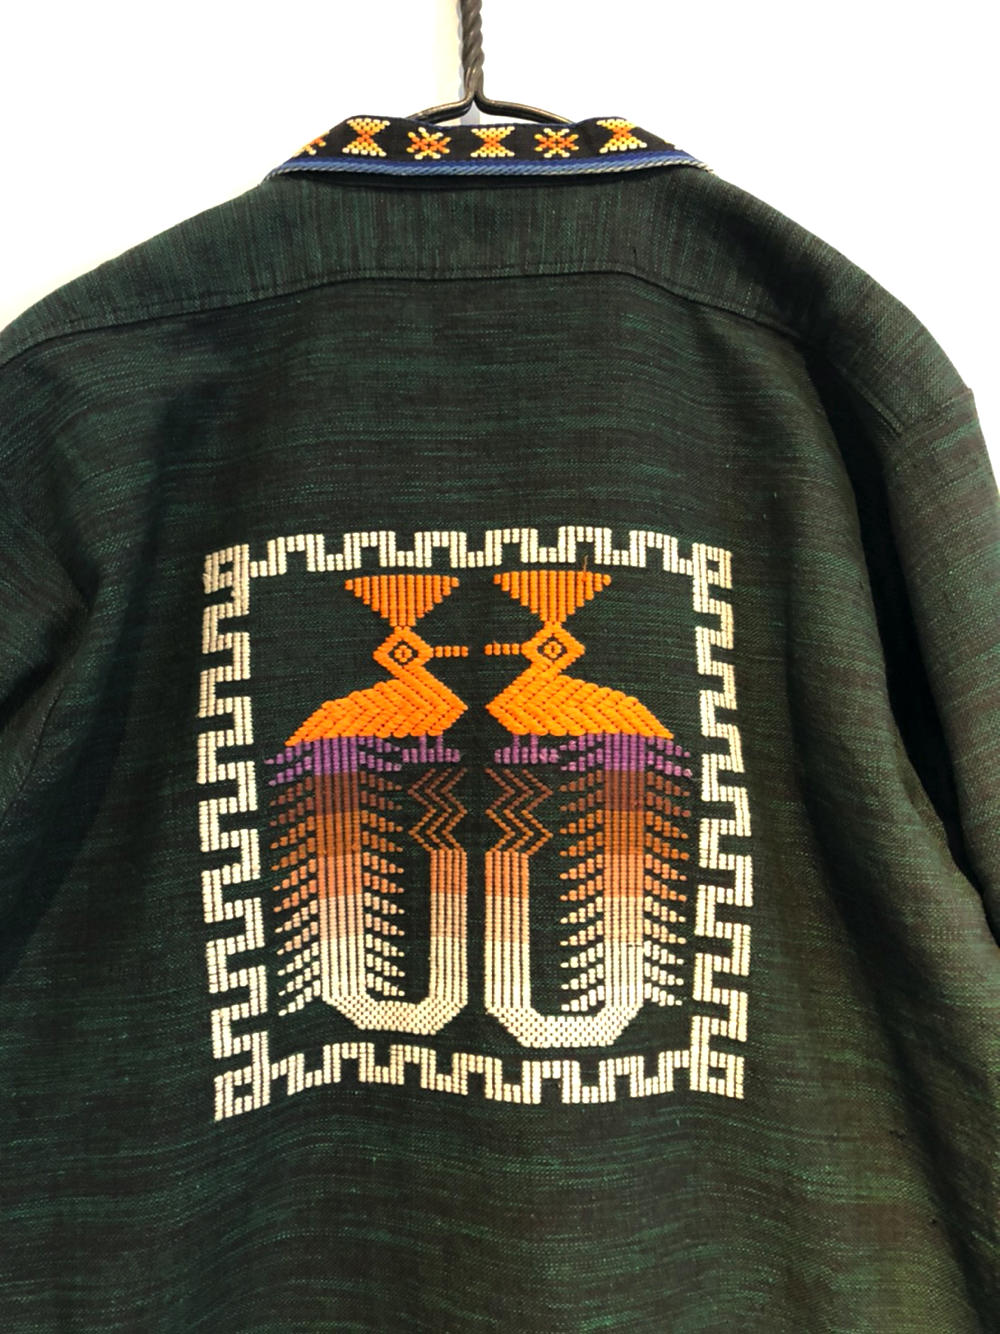 ヴィンテージ ガテマラシャツ【1970's】Vintage Guatemala Shirt 